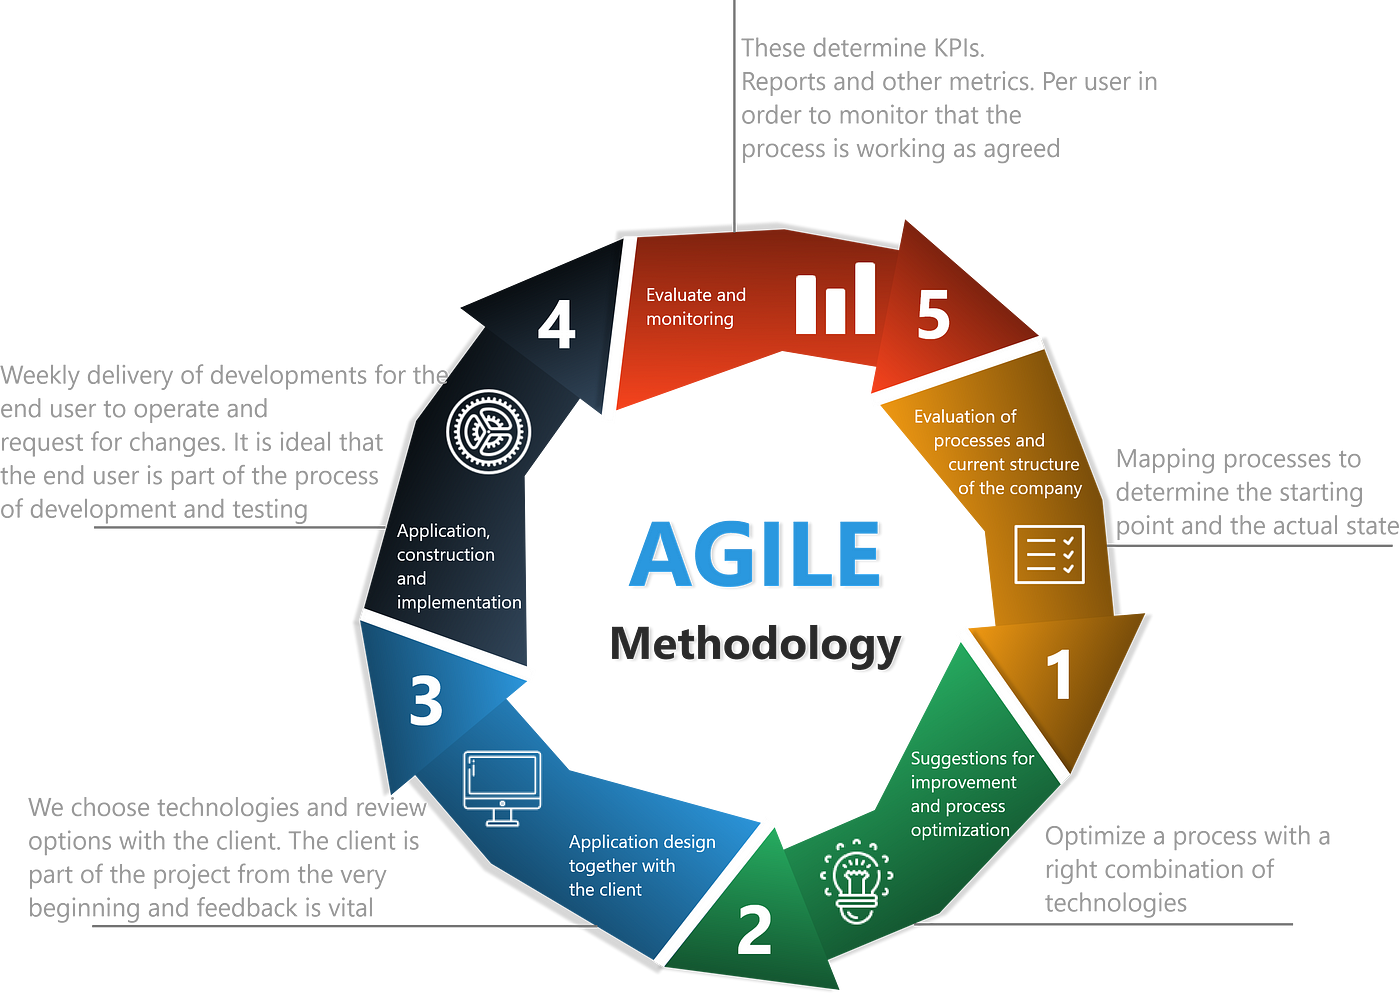 Agile Methodology